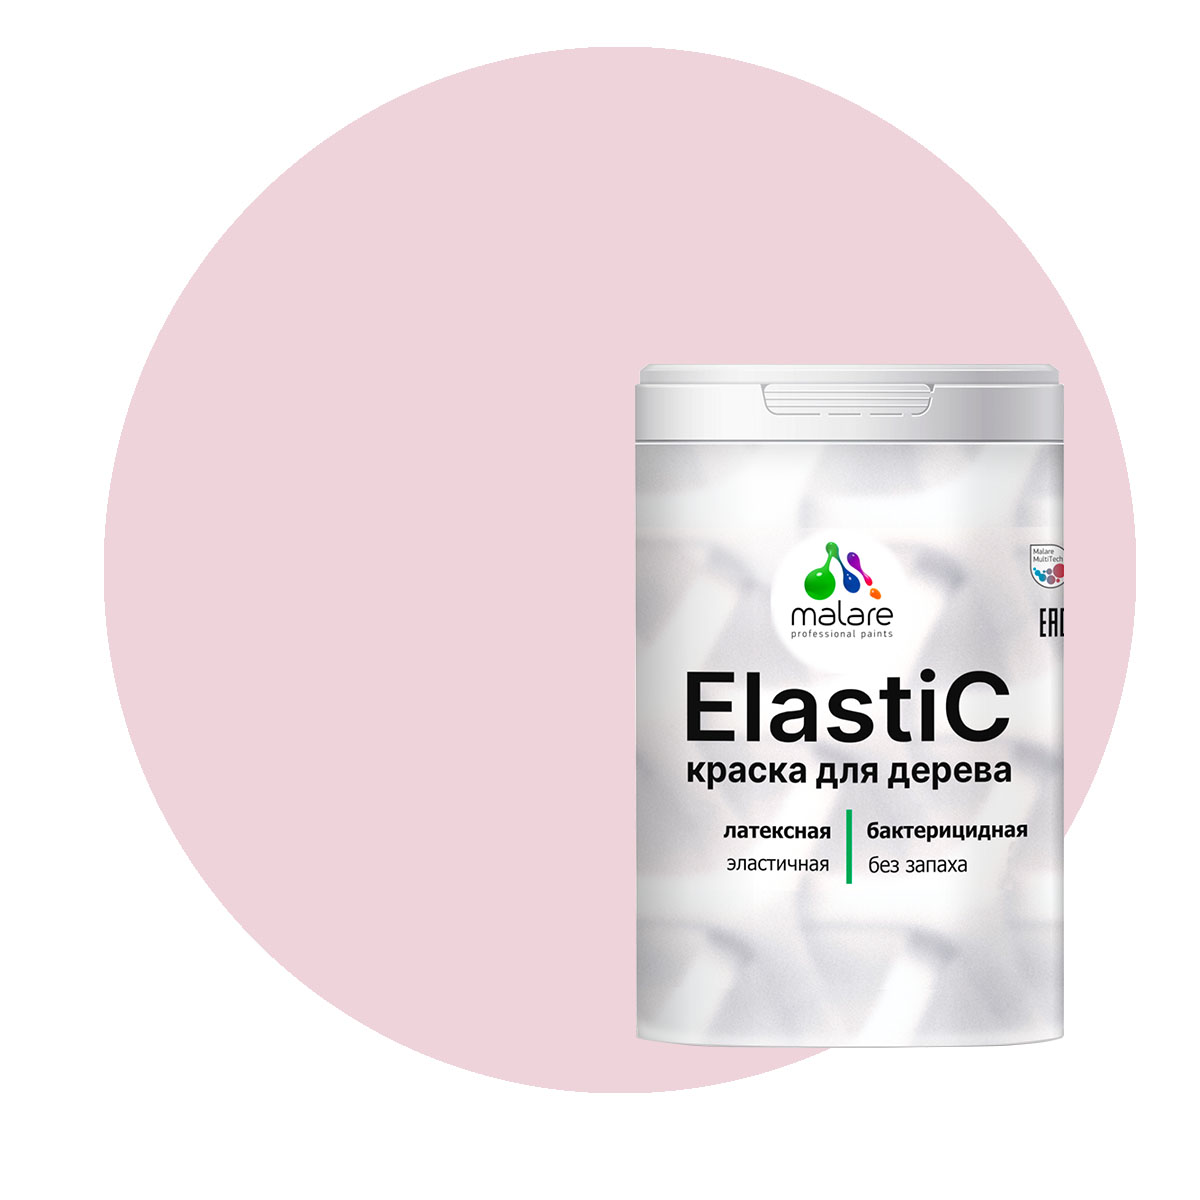 Краска Malare Elastic для деревянных поверхностей, бледно-розовый, 2 кг. краска malare для окон и дверей деревянных поверхностей бледно розовый 10 кг